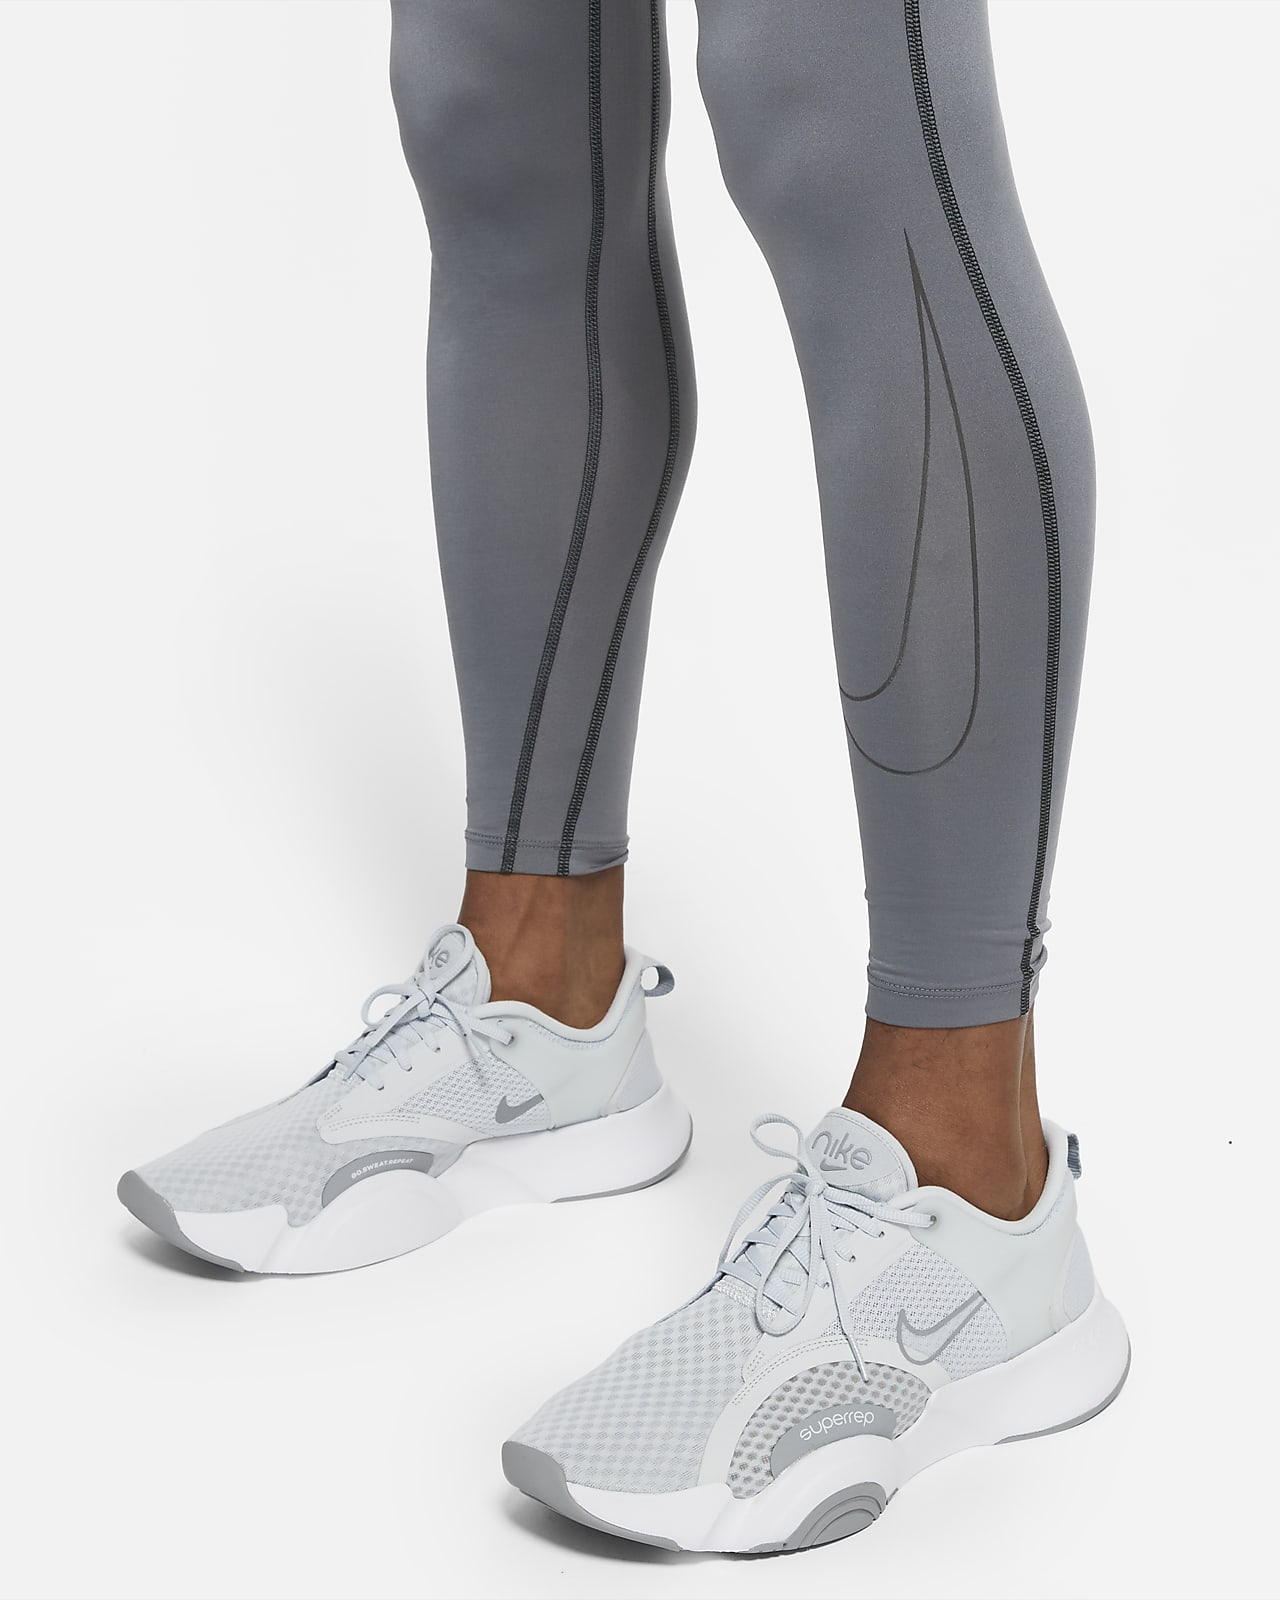 Legging 3/4 Nike Pro Dri-FIT pour Homme. Nike FR